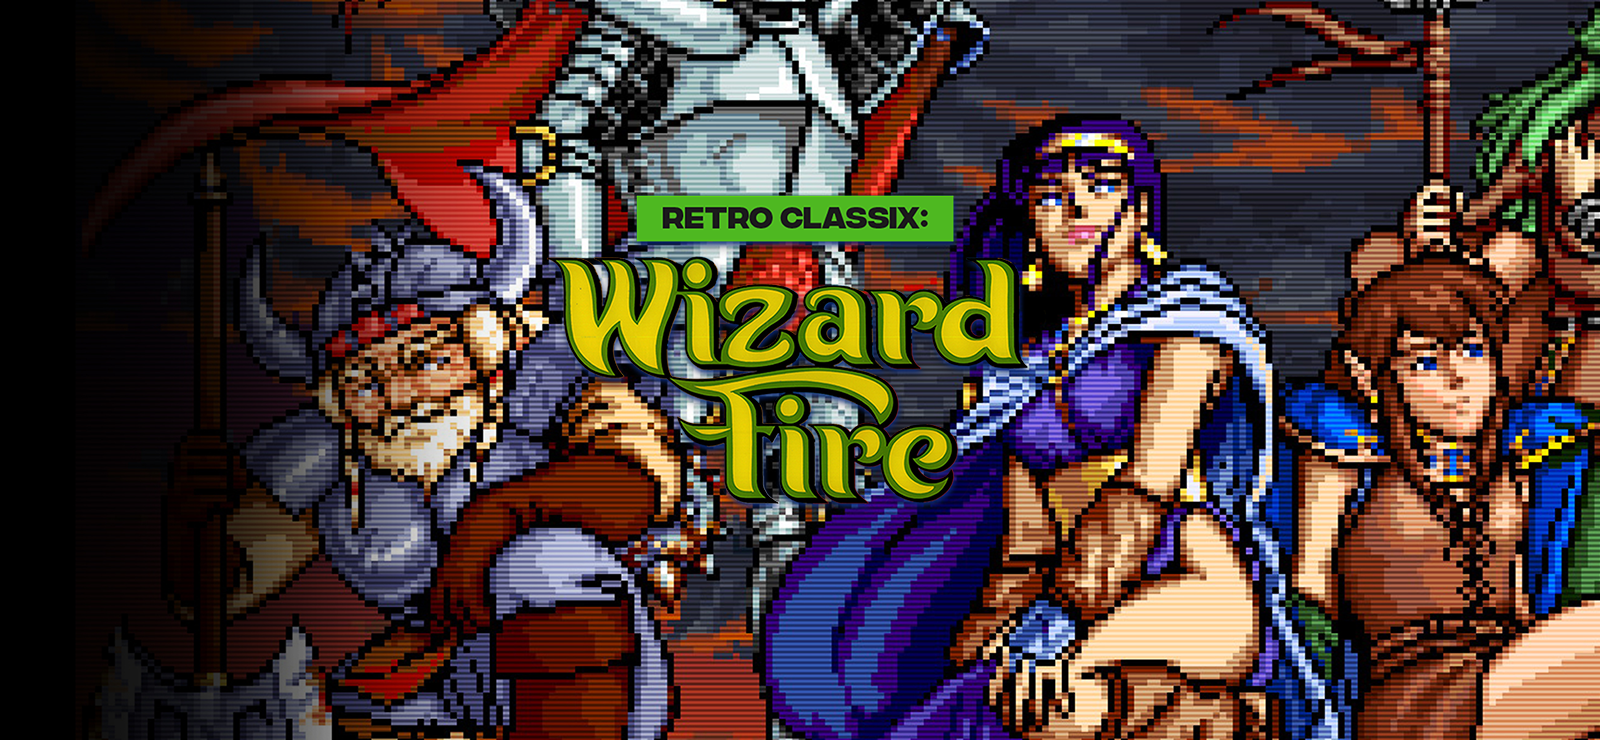 Retro Classix: Wizard Fire